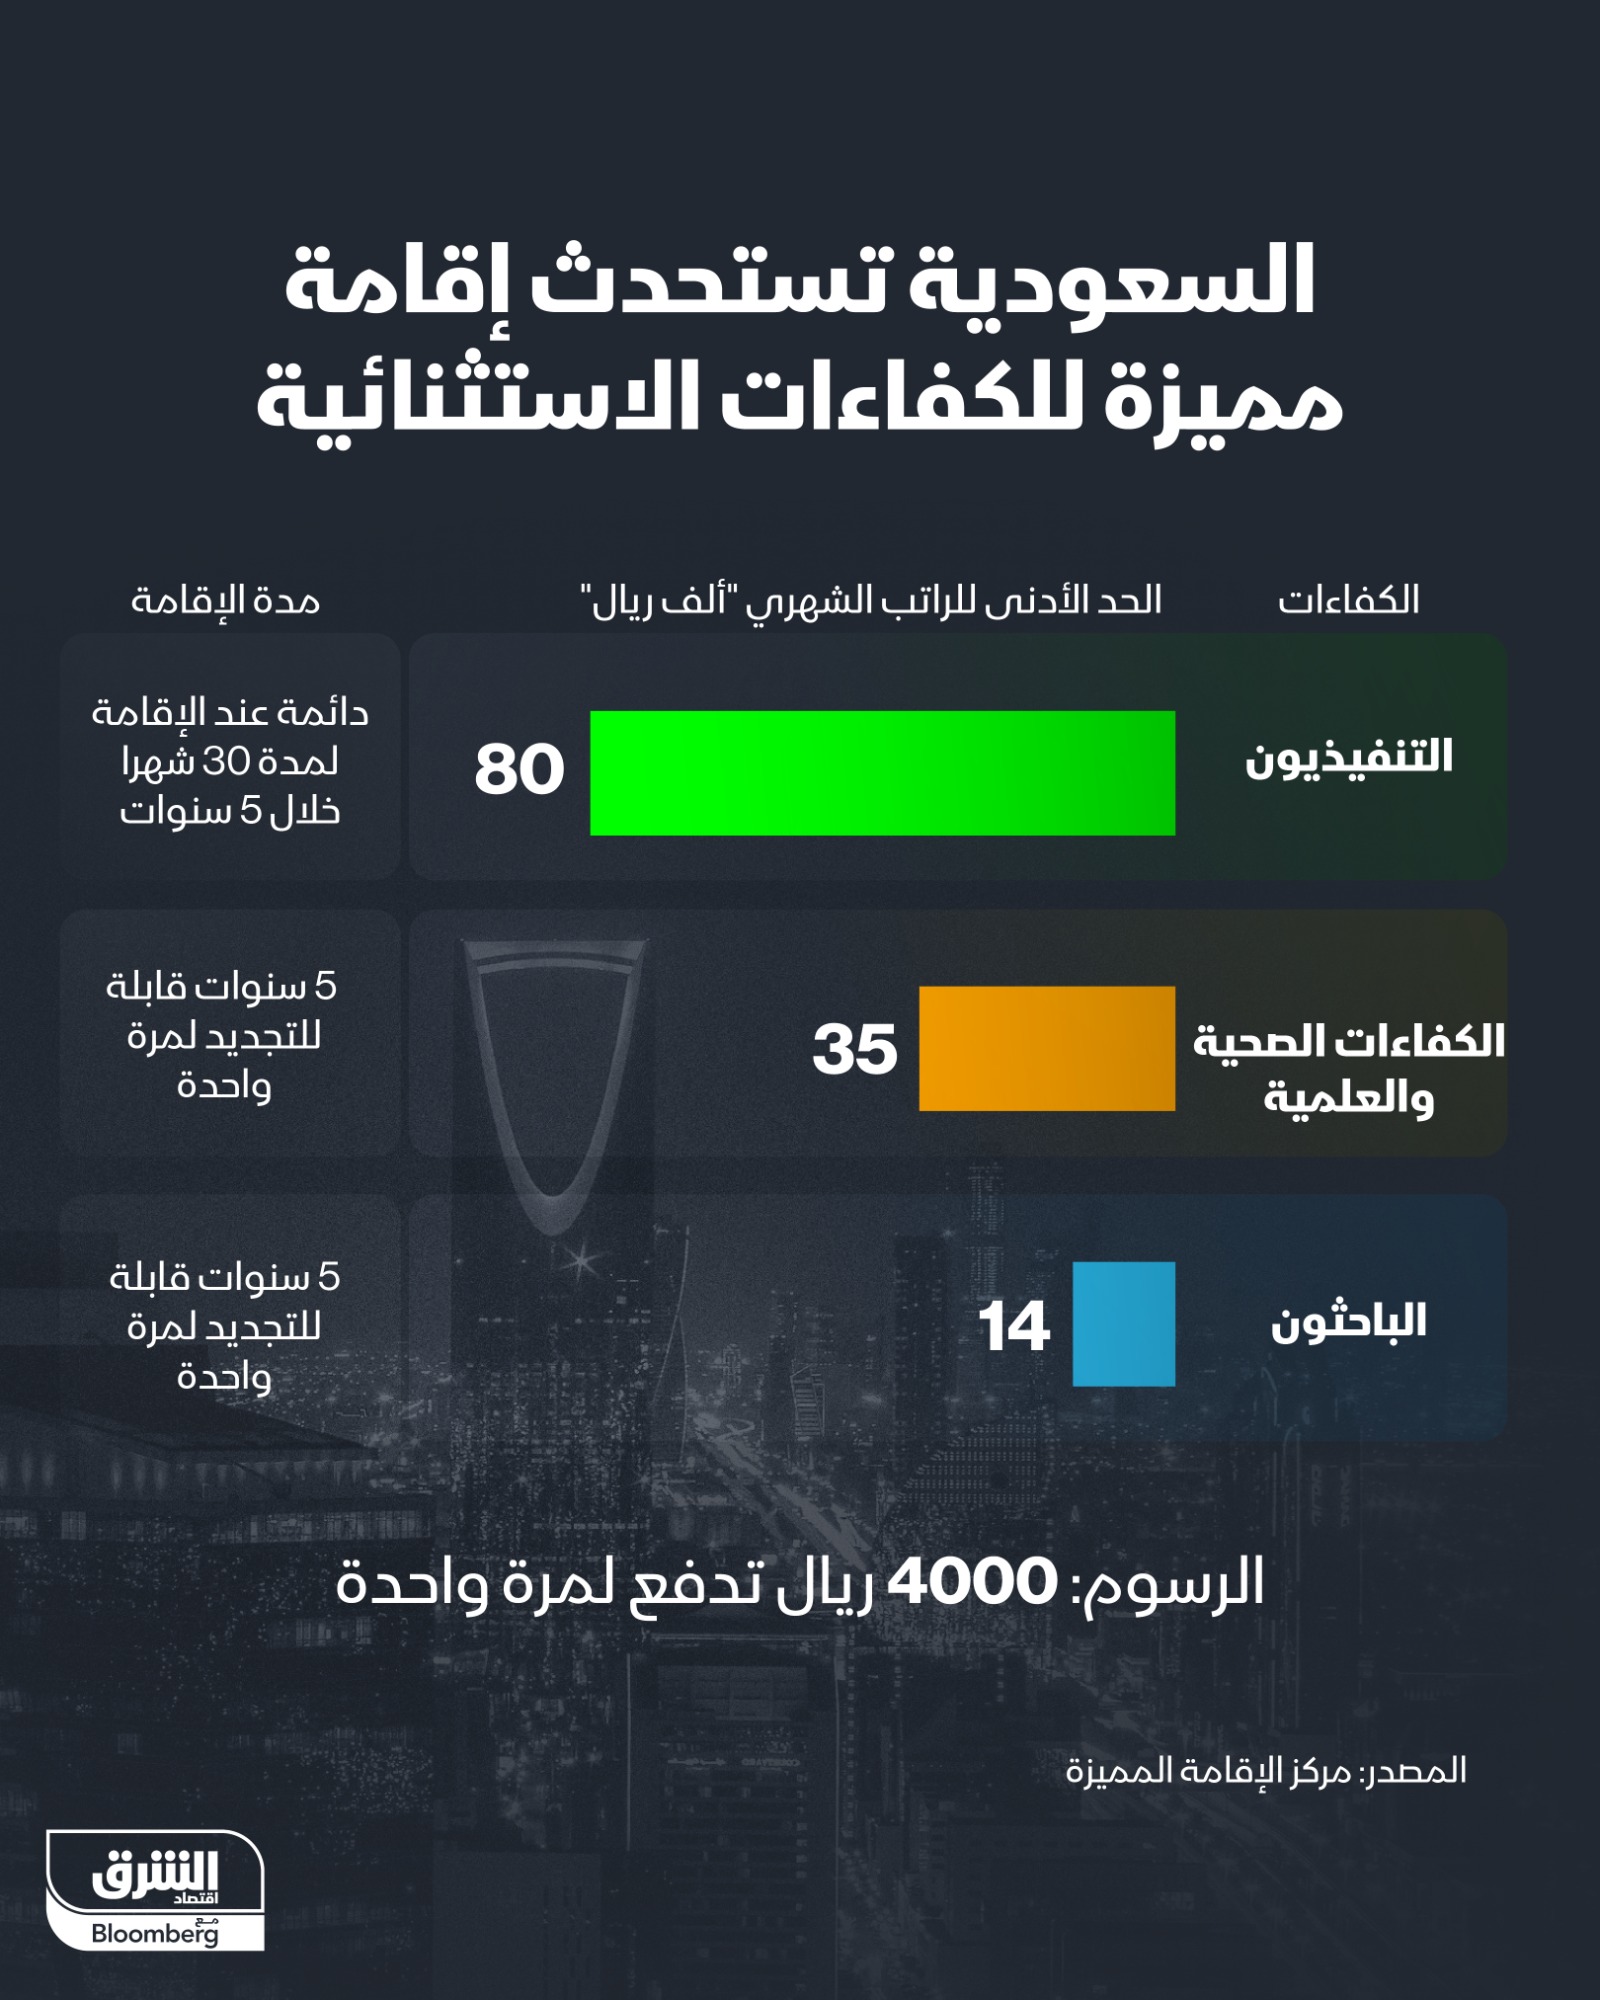 إنفوجرافيك يوضح شروط وإجراءات الحصول على إقامة أصحاب الكفاءات الاستثنائية في السعودية